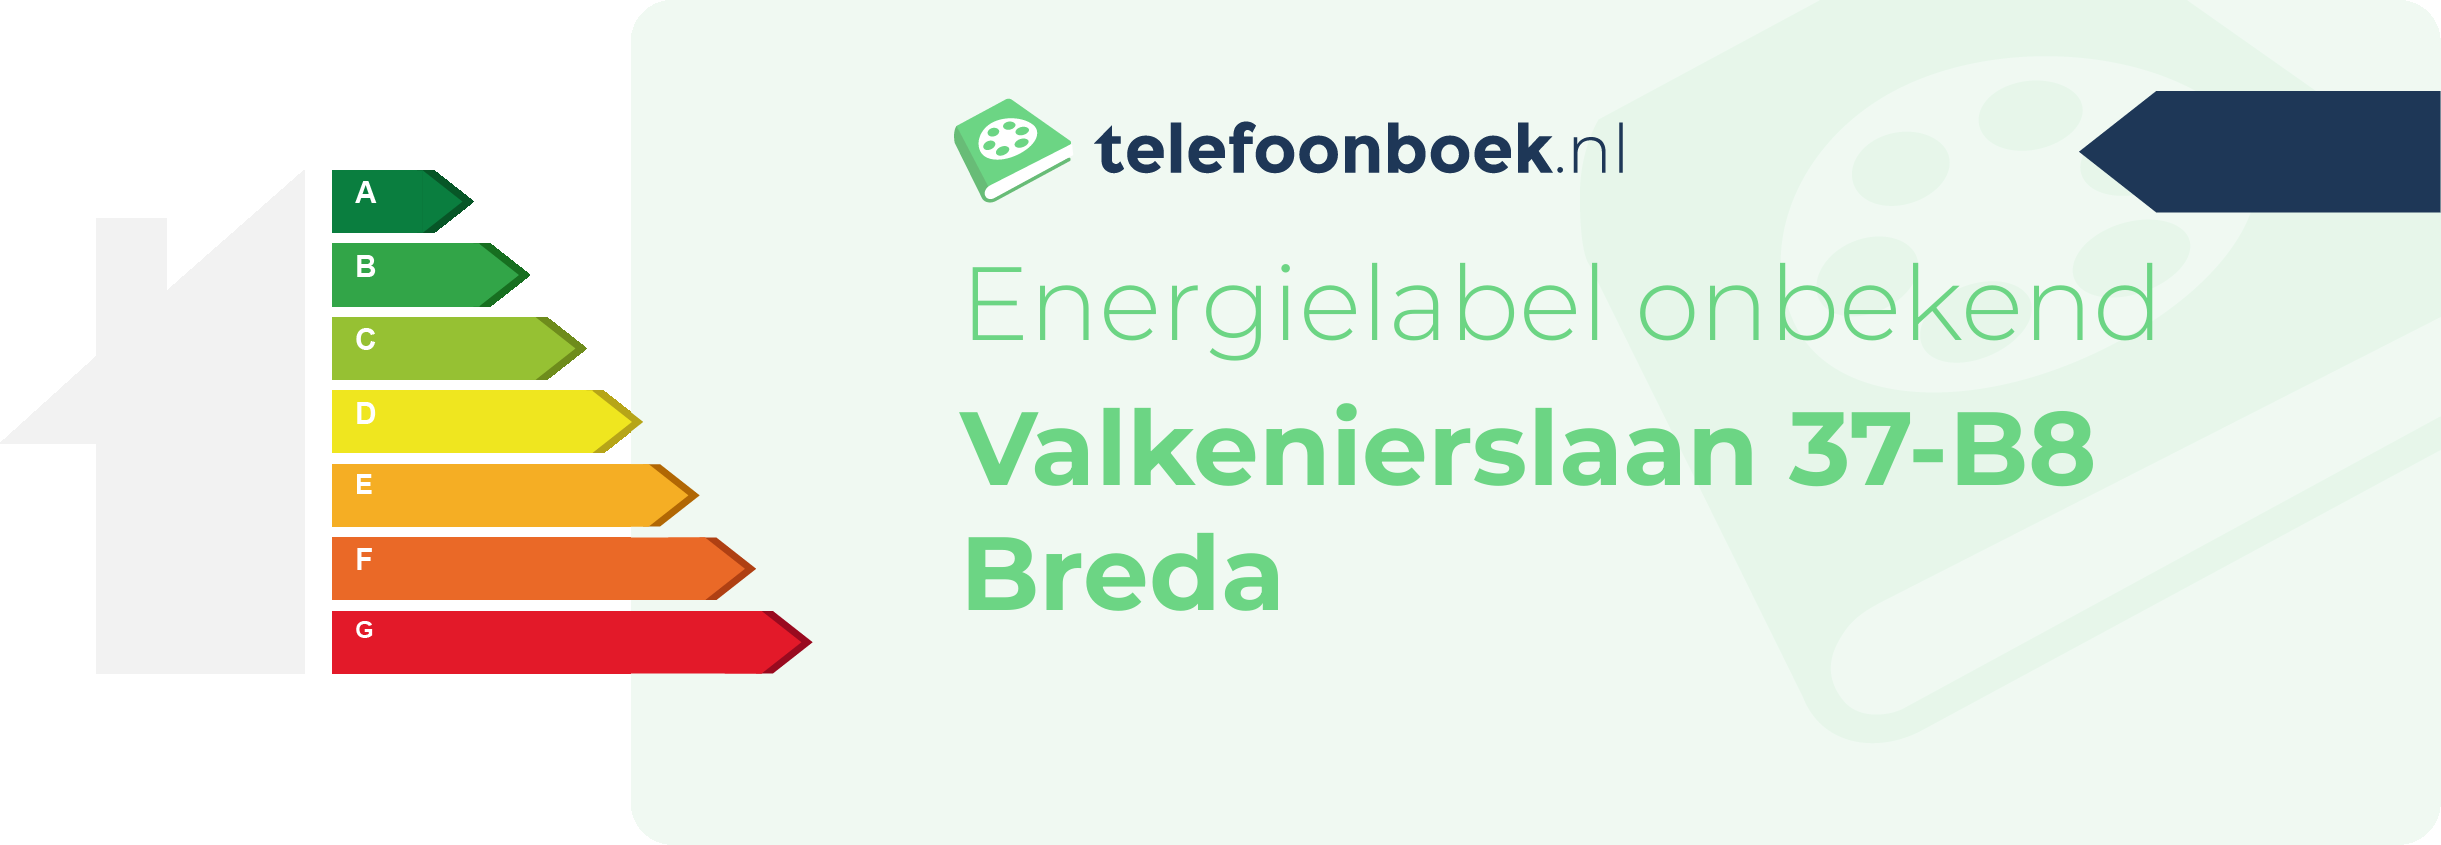 Energielabel Valkenierslaan 37-B8 Breda